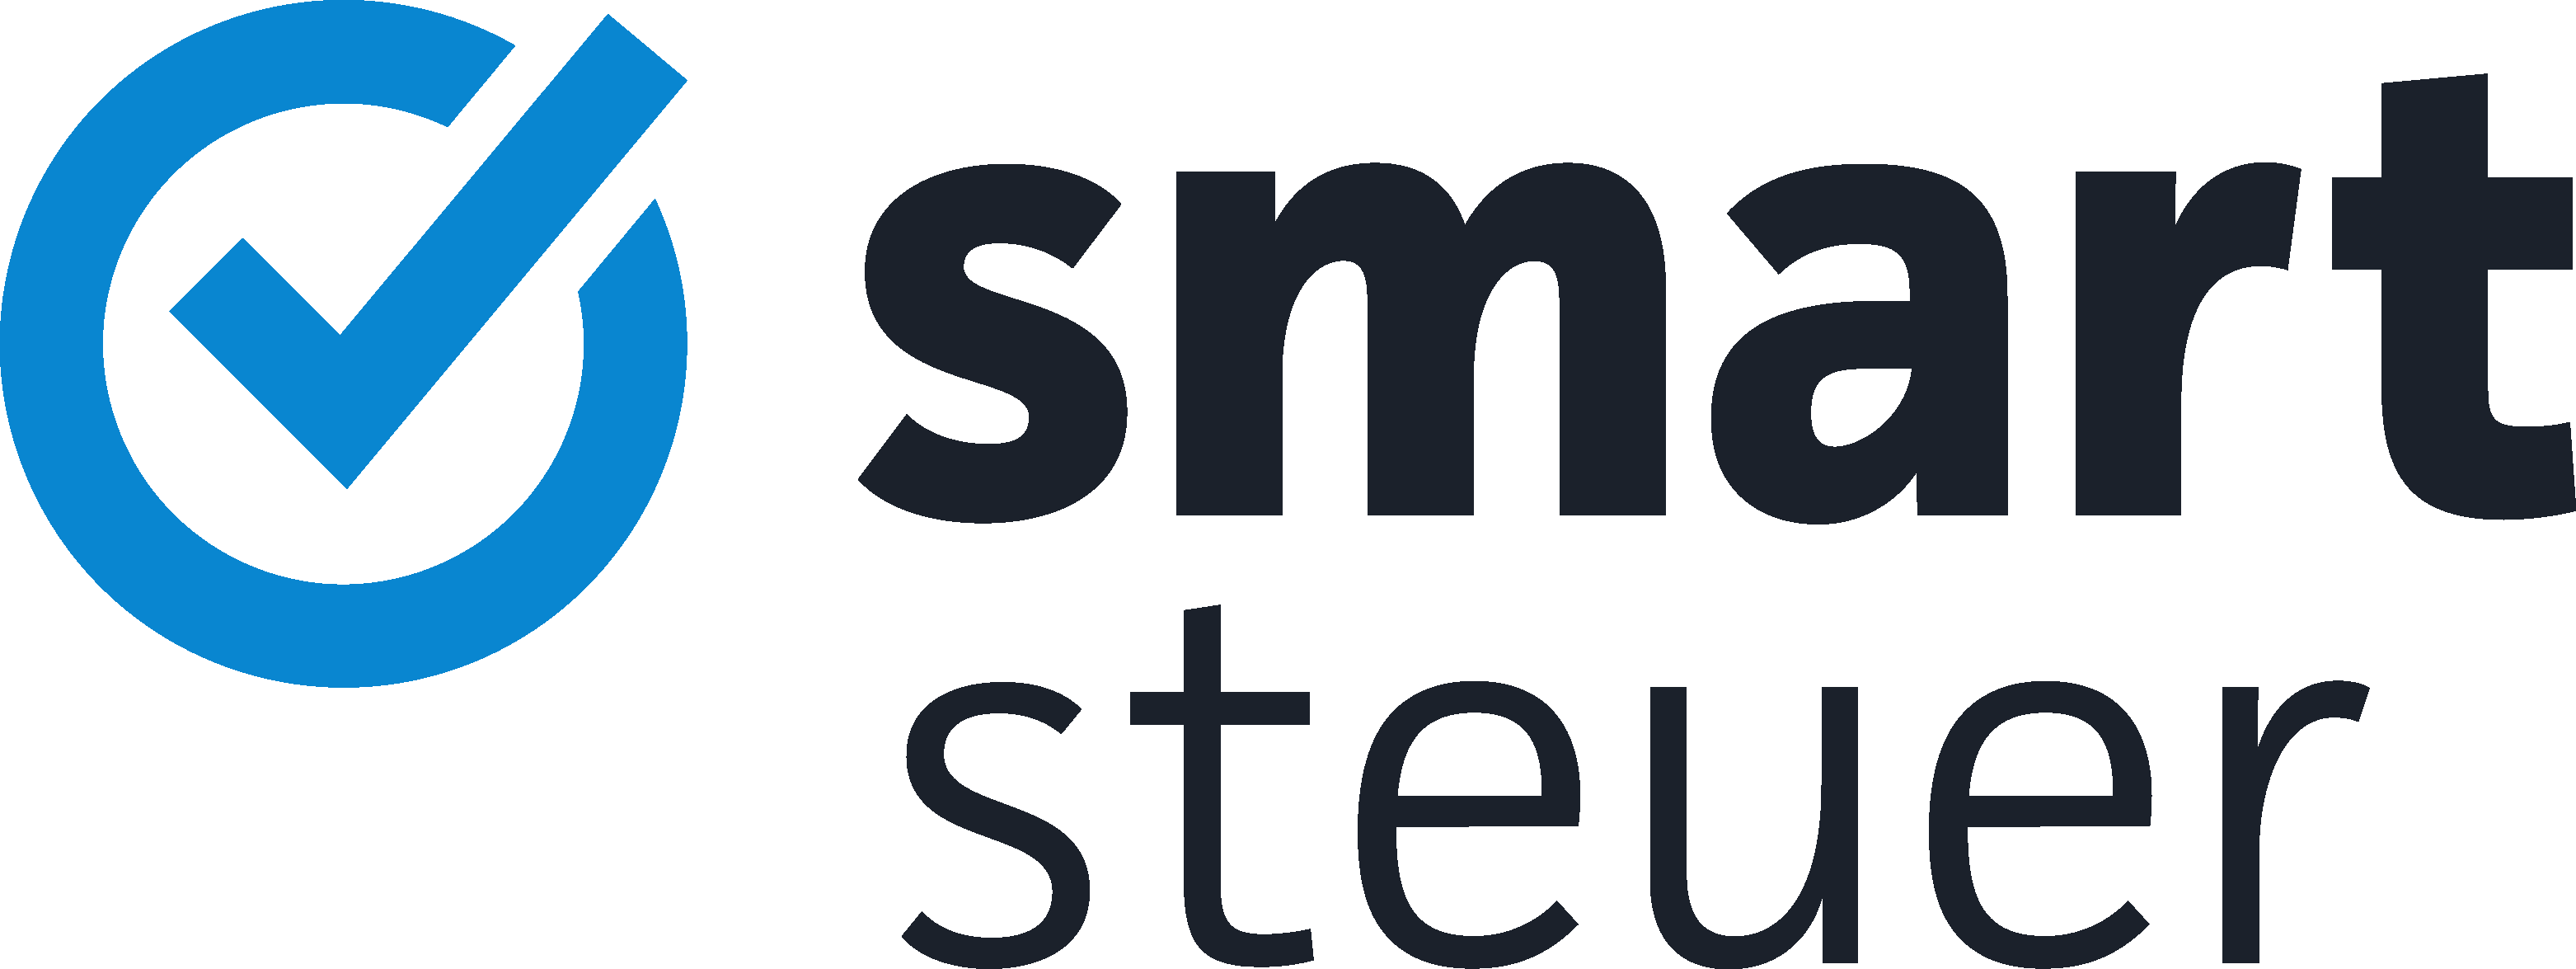 smartsteuer logo color rgb 2020 03